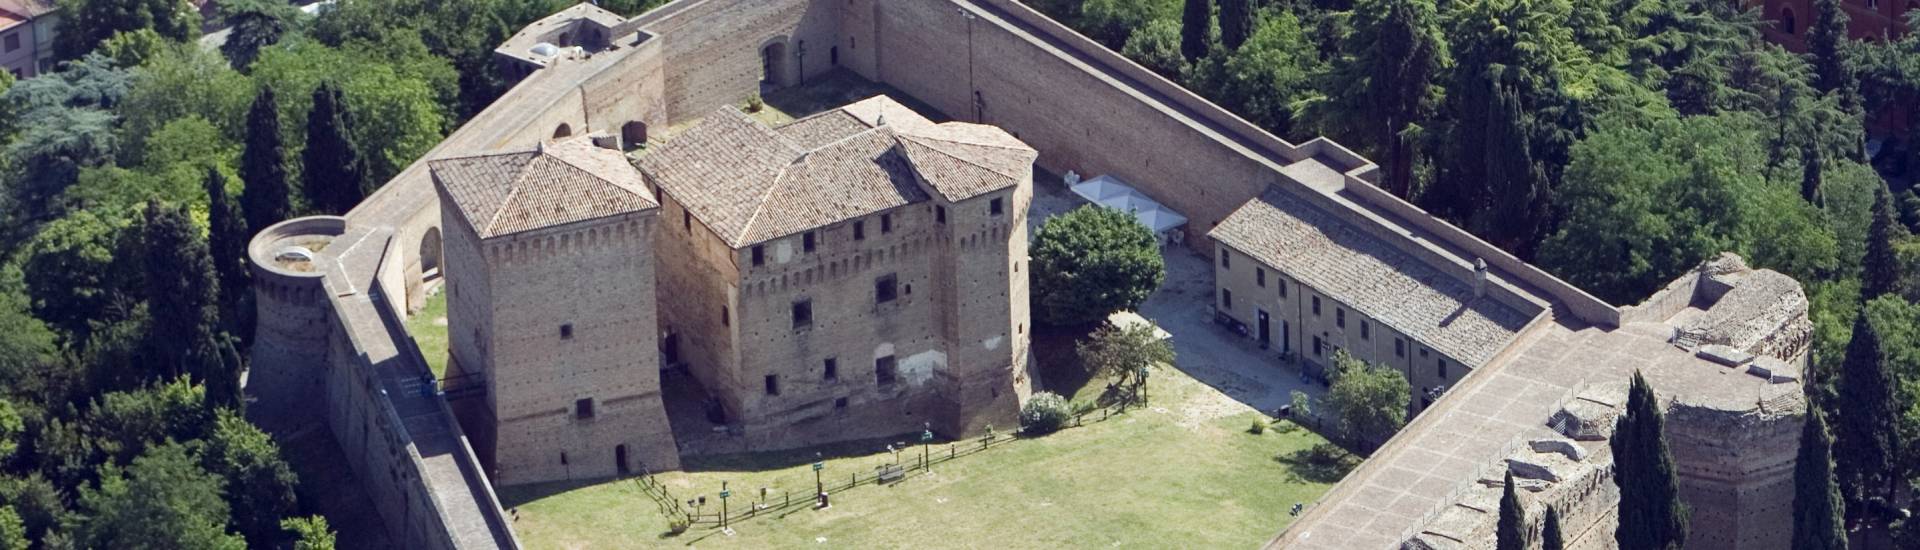 Malatestian Fortress - Rocca malatestiana Cesena- foto aerea photo credits: |Michele Buda| - Archivio Uff. Prom.Turistica Comune di Cesena